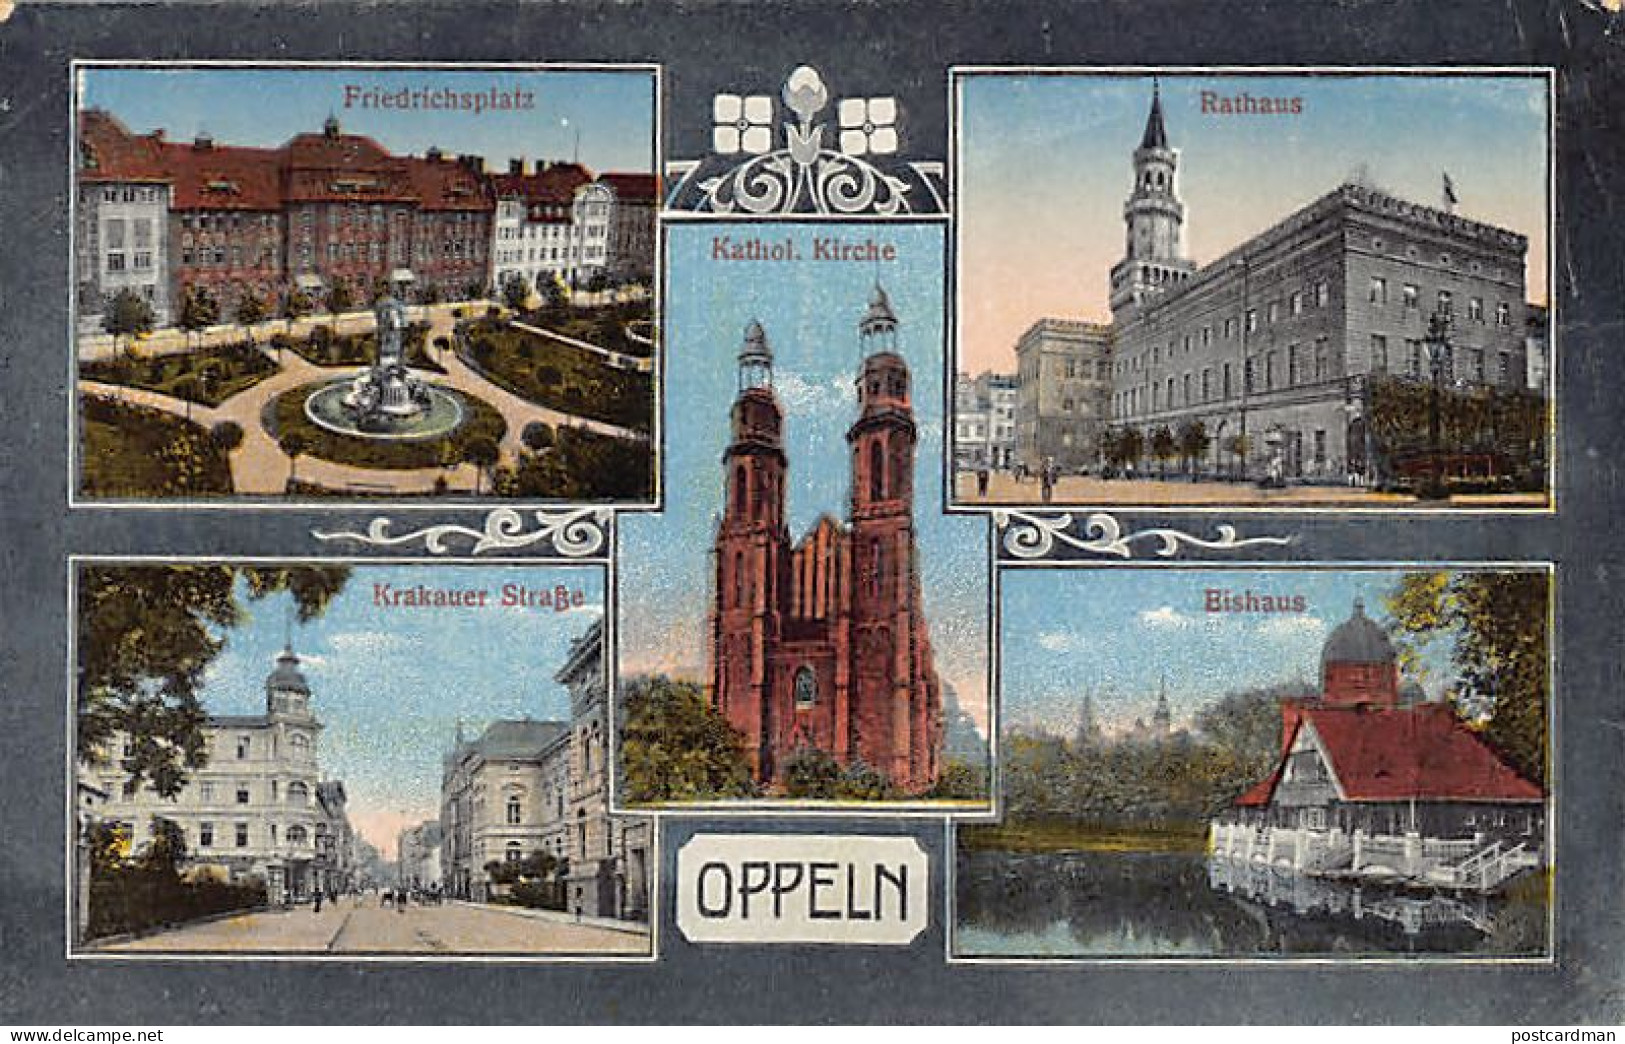 Poland - OPOLE Oppeln - Krakauer Strasse - Rathaus - Kathol. Kirche - Friedrichsplatz - Bishaus  - Polen